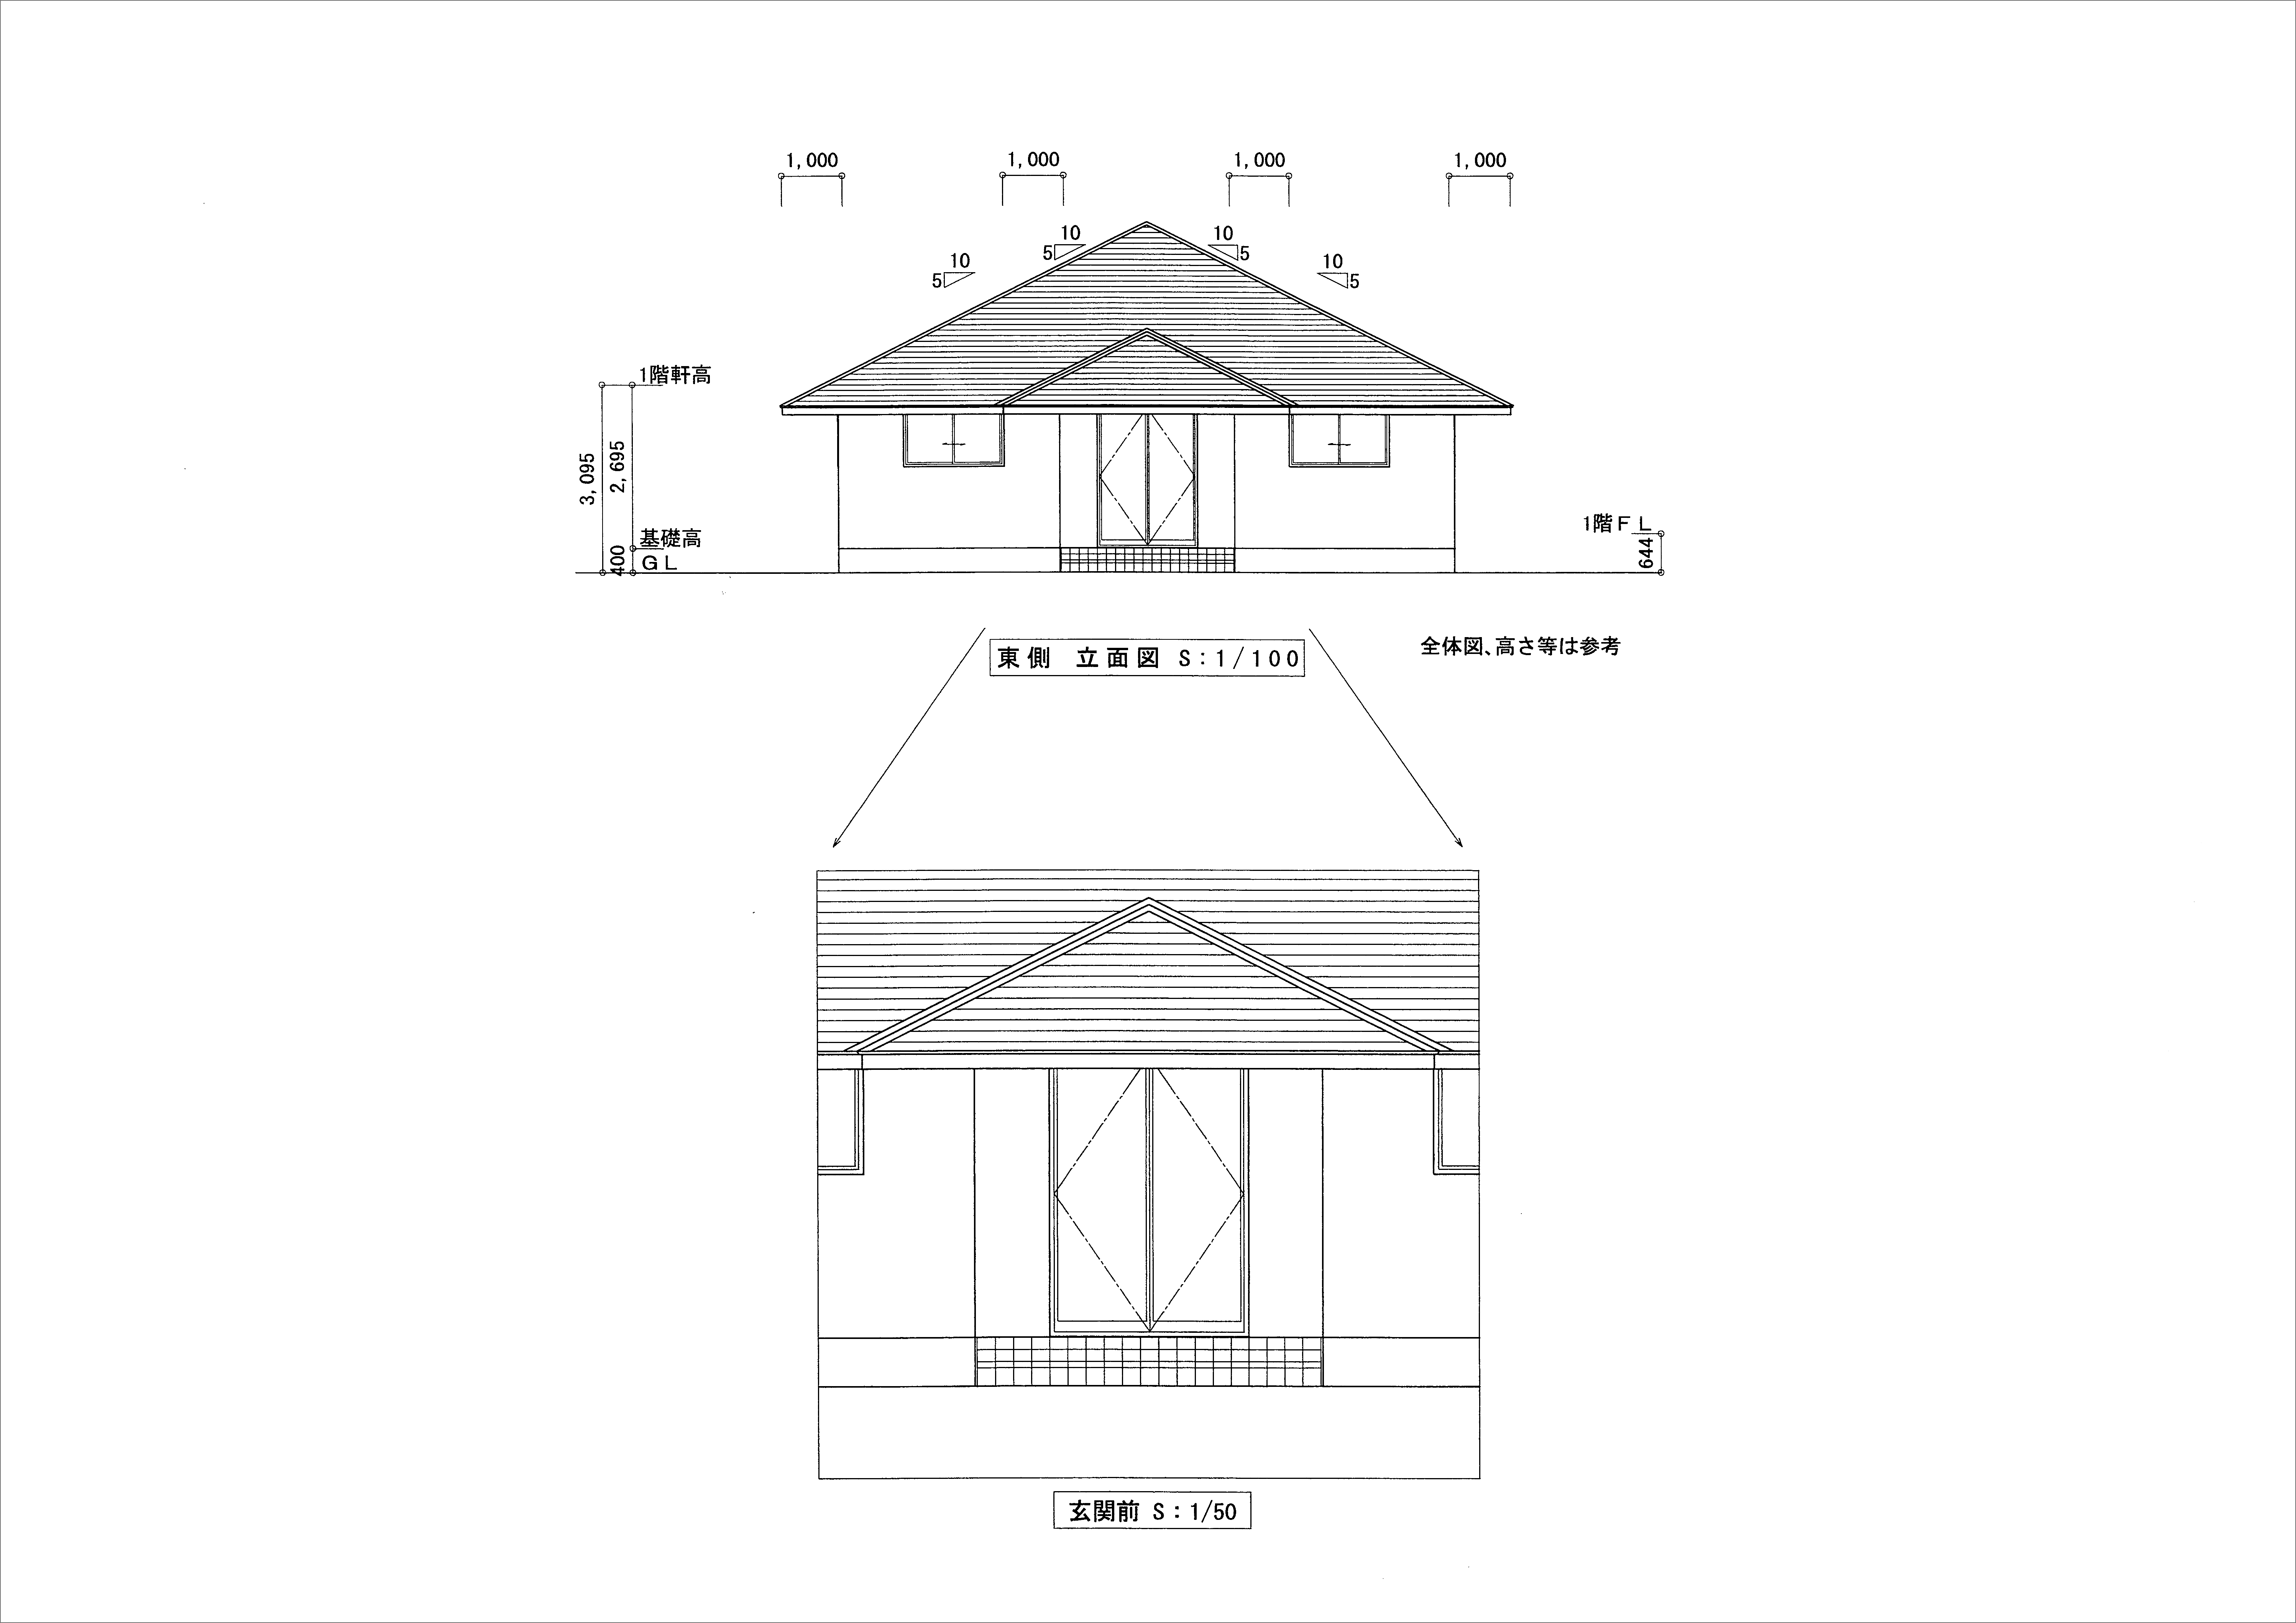 HIMALAYAHOUSE VAASTU Design Plan